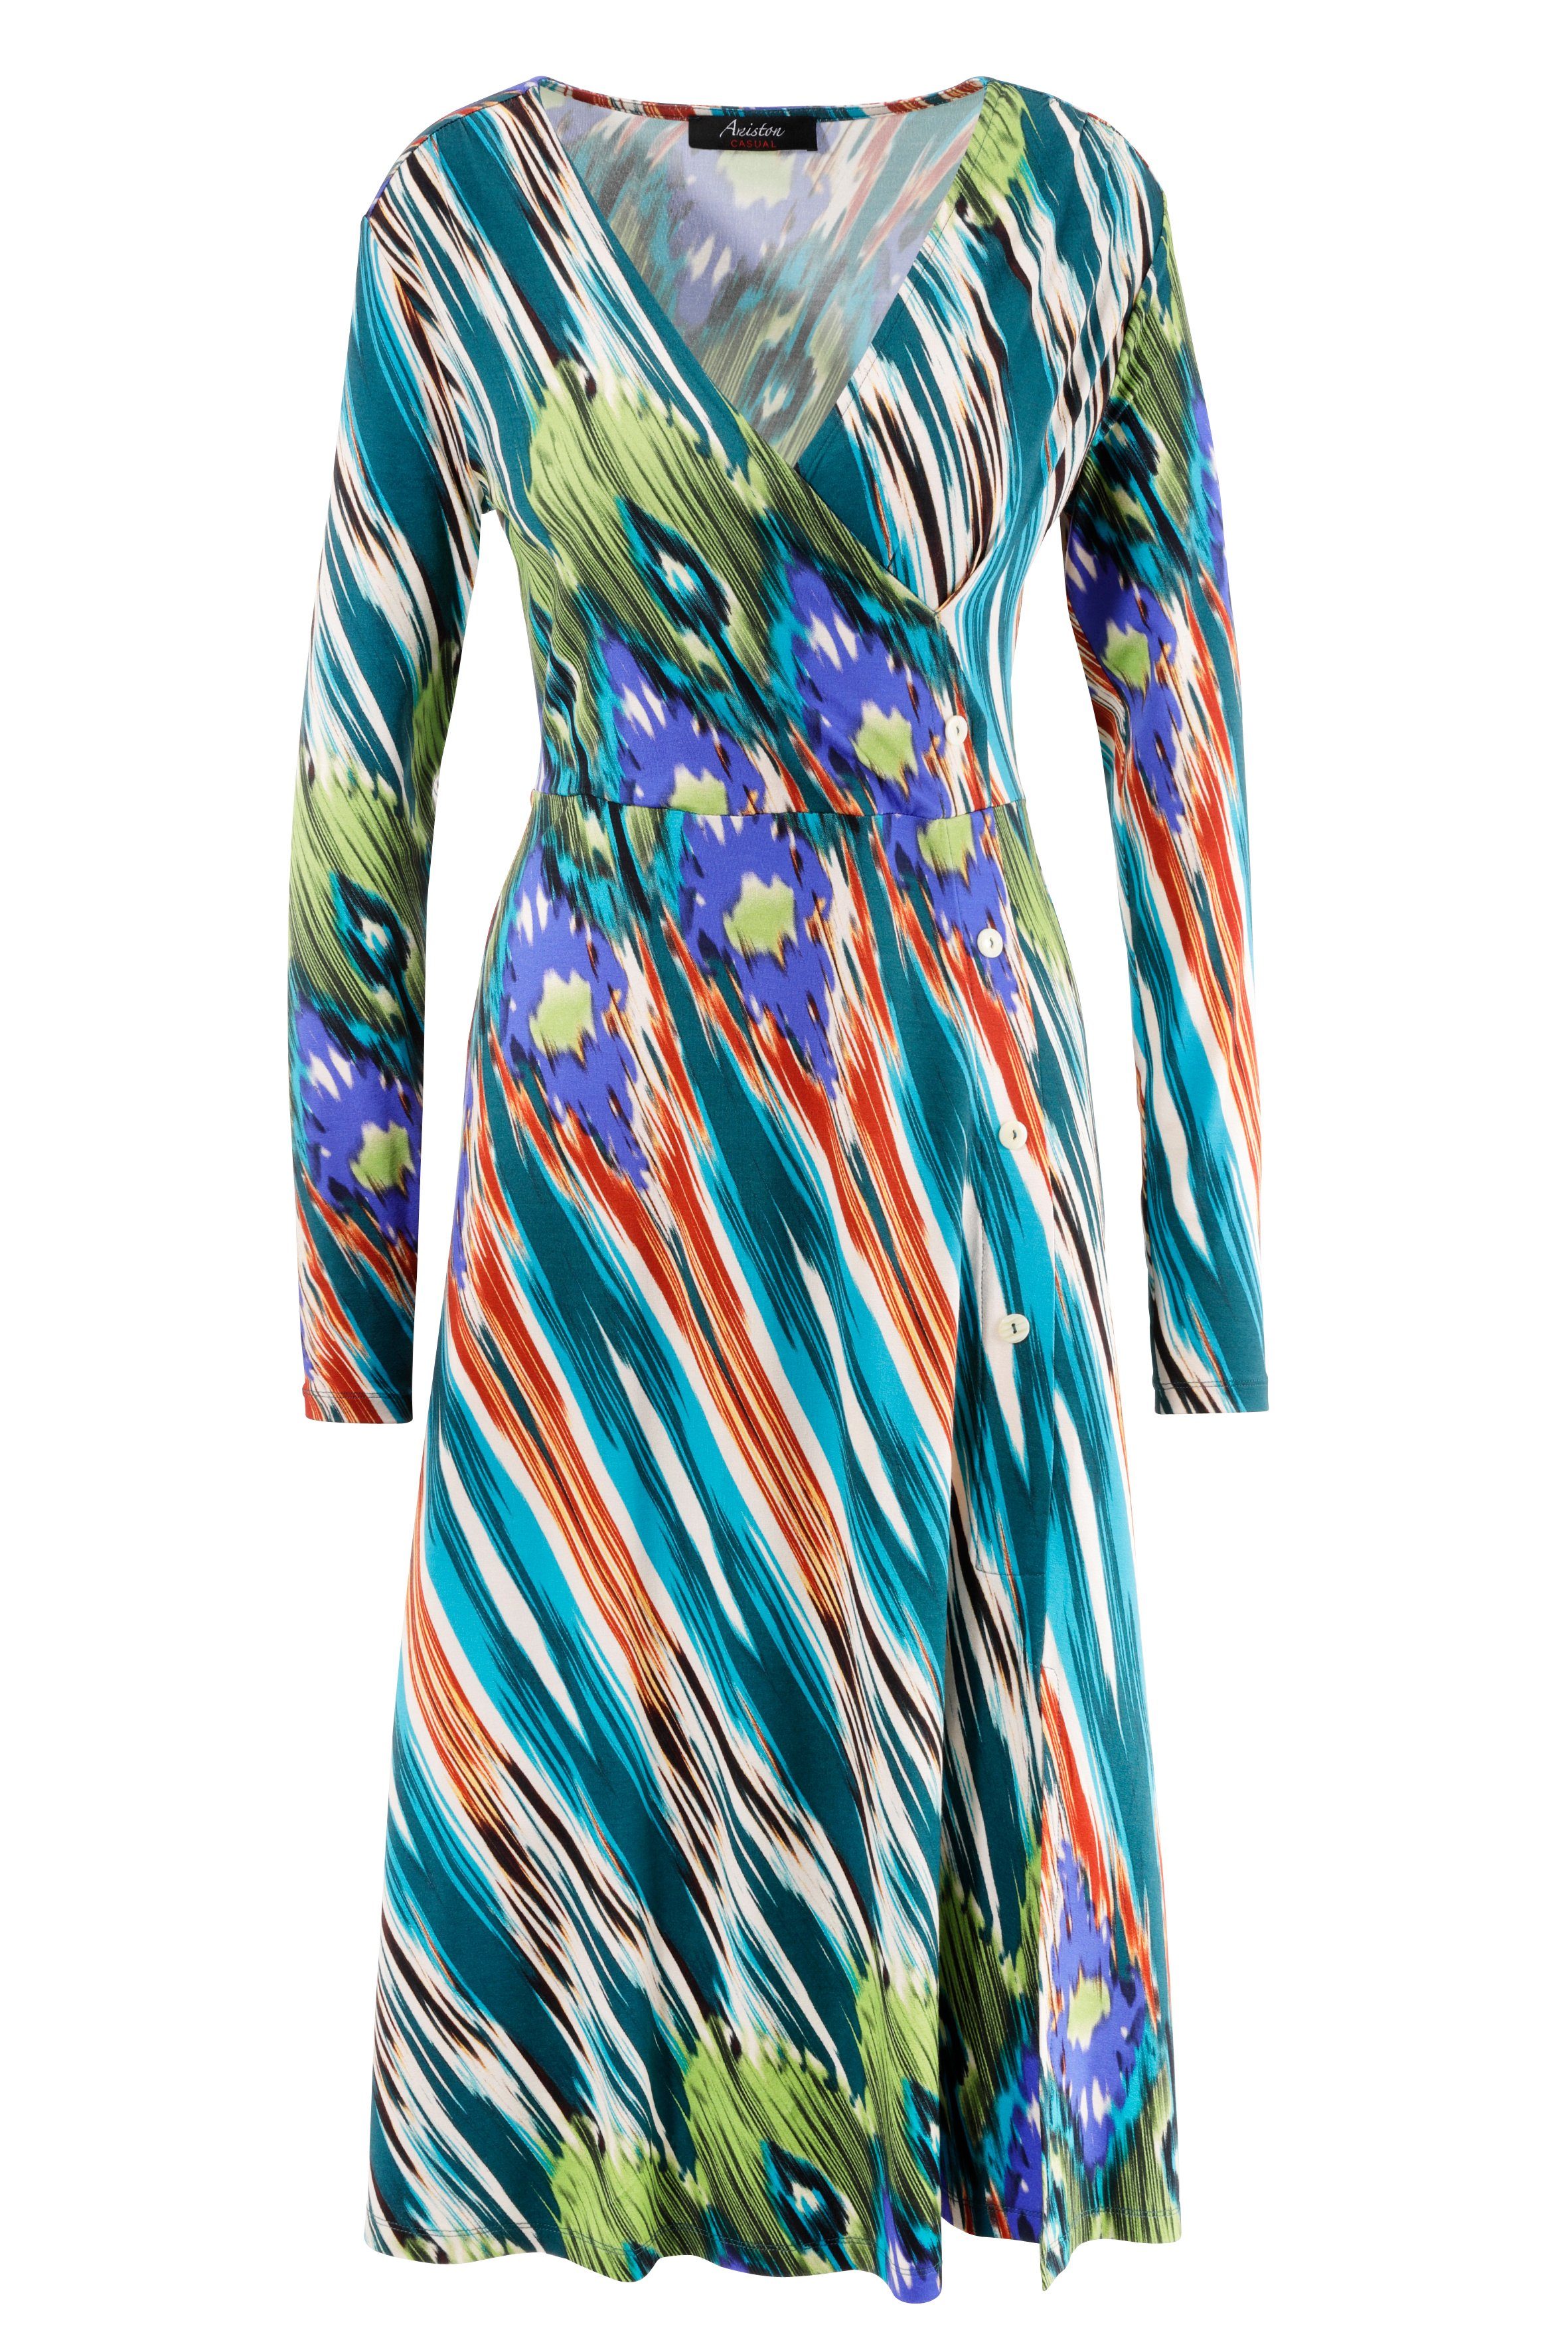 - Ethno-Druck Jerseykleid mit Teil ein farbenfrohem Unikat CASUAL Aniston jedes